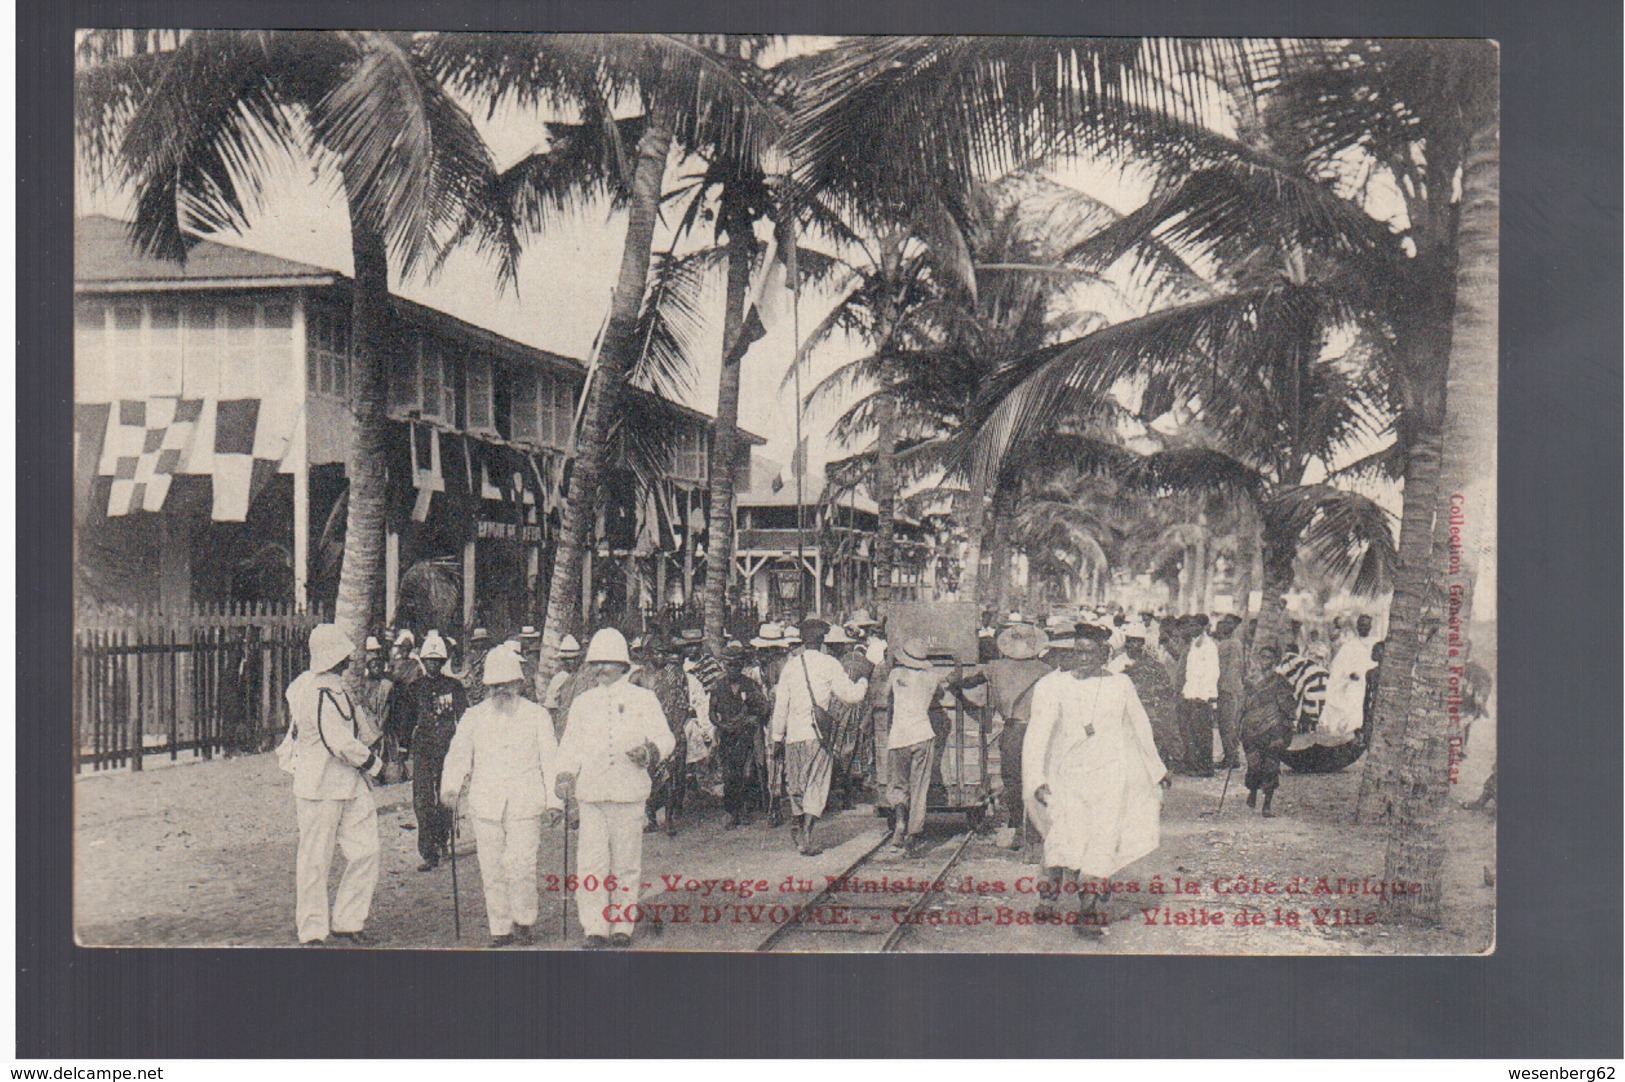 Cote D'Ivoire Voyage Du Ministre Des Colonies- Grand- Bassam Visite De La Ville Ca 1905 Old Postcard - Côte-d'Ivoire